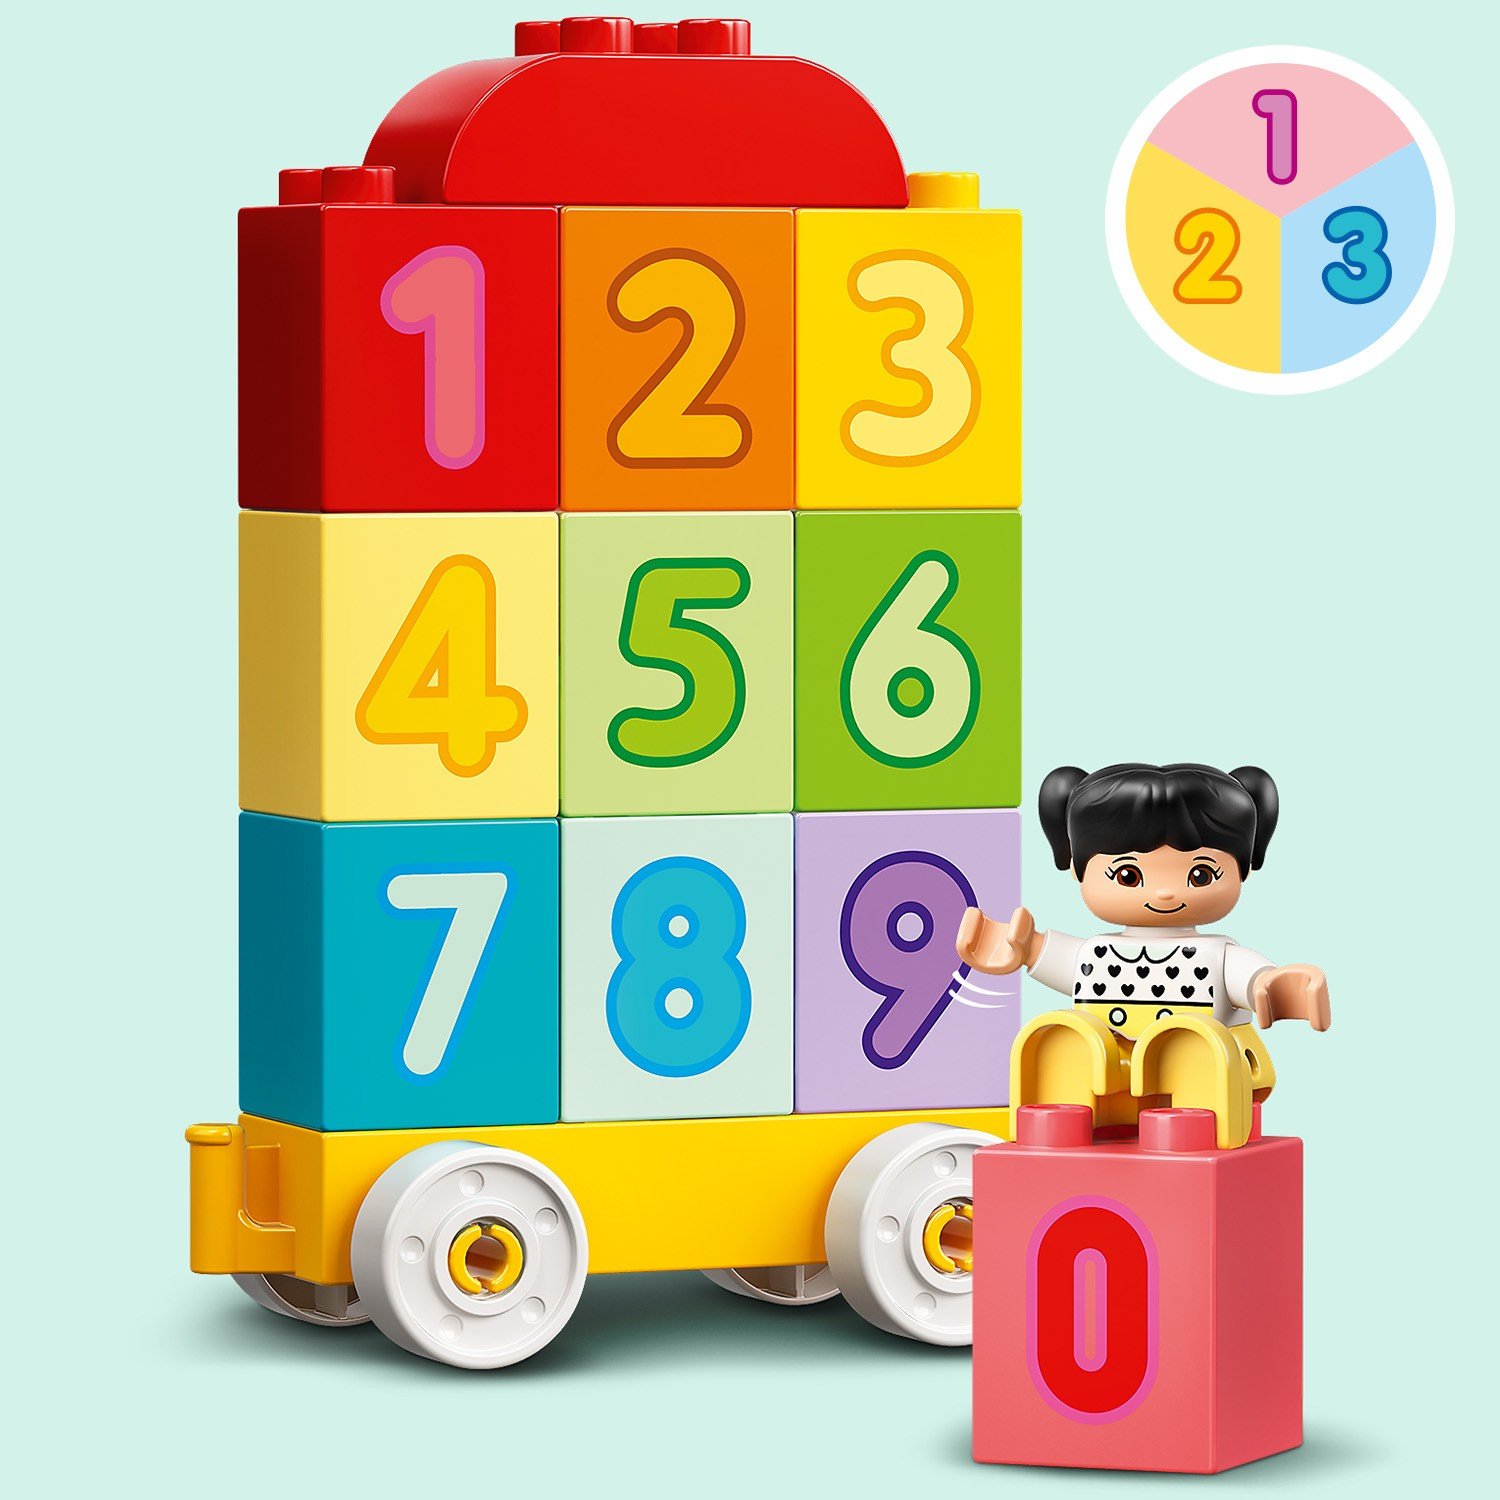 Lego Duplo 10954 Поезд с цифрами — учимся считать